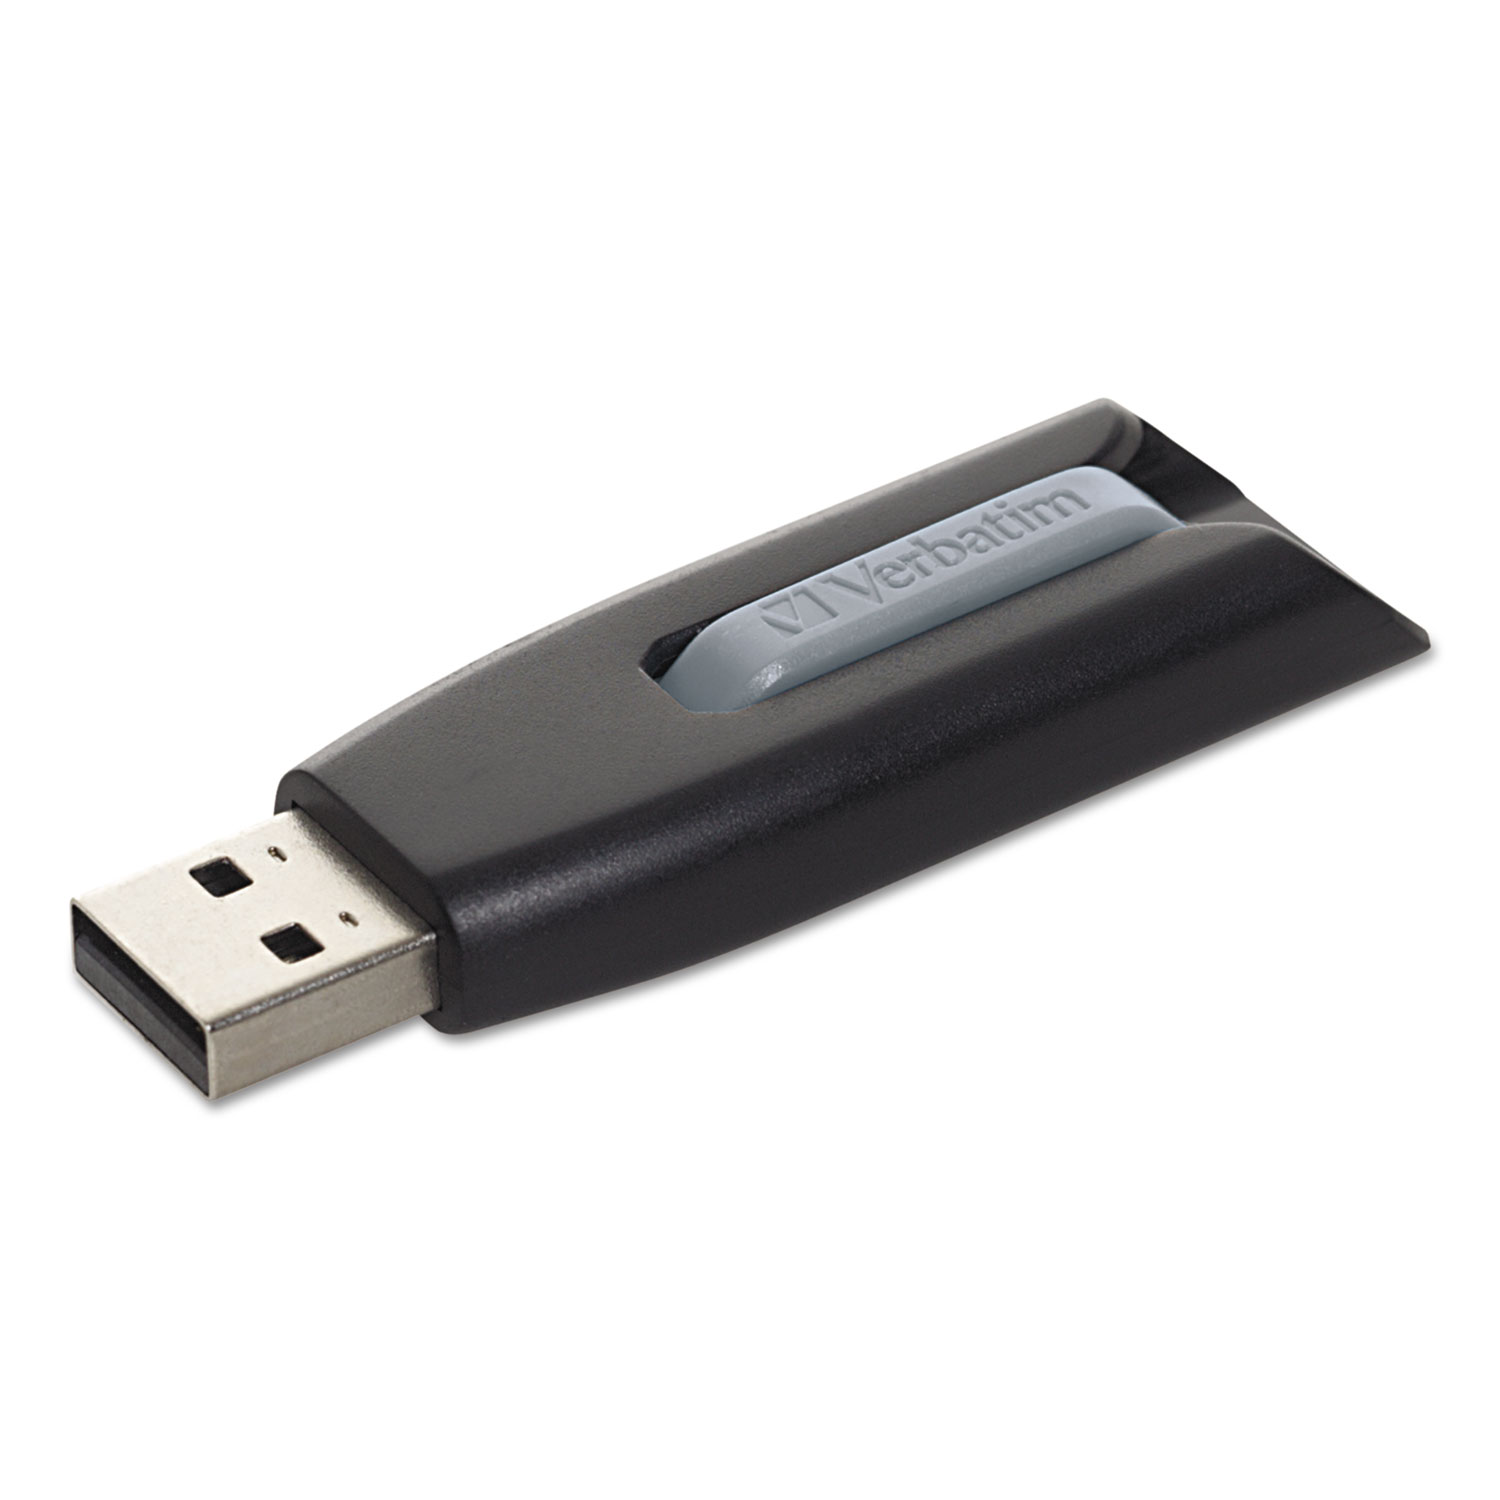  Verbatim 49174 Store 'n' Go V3 USB 3.0 Drive, 64 GB, Black/Gray (VER49174) 